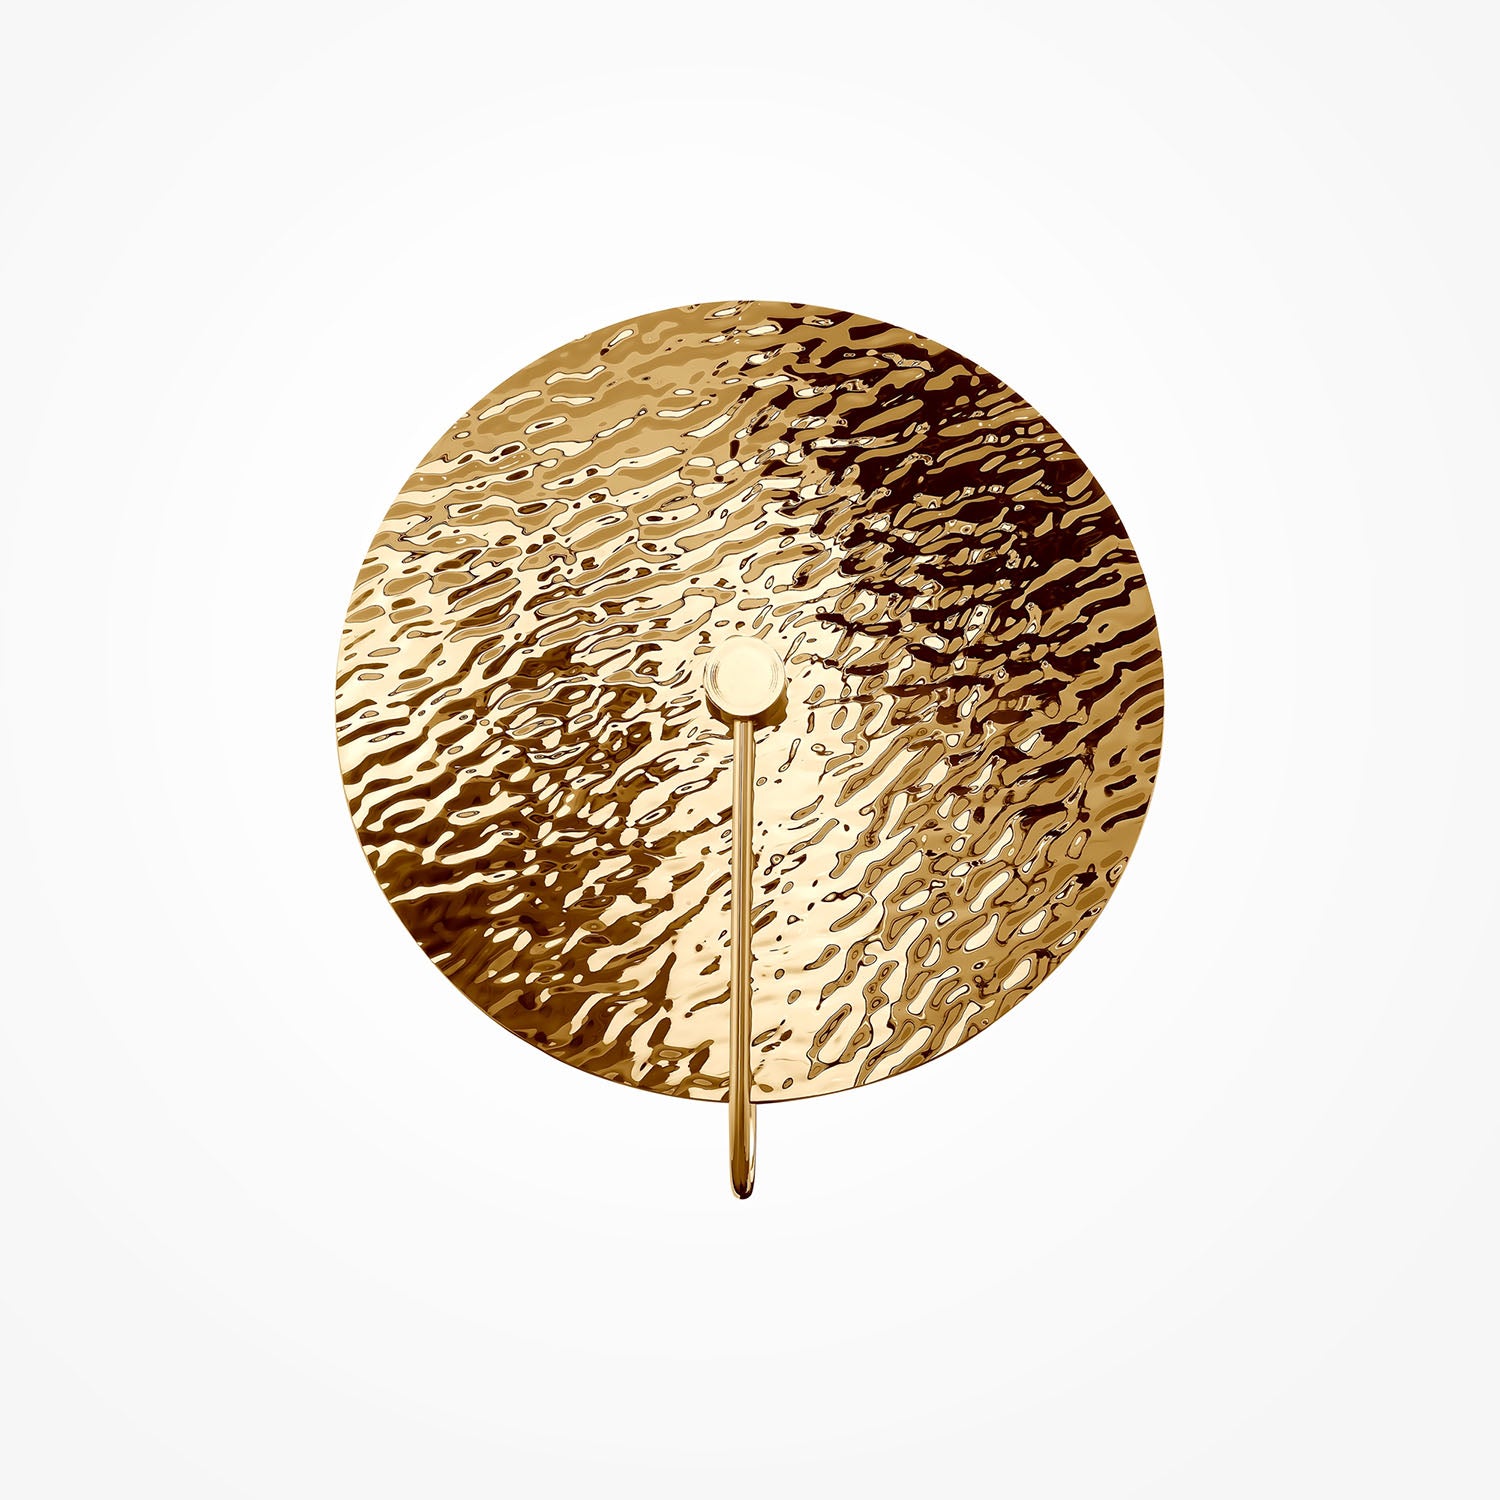 MARE – Runde Wandleuchte aus goldgehämmertem Metall oder Stahl